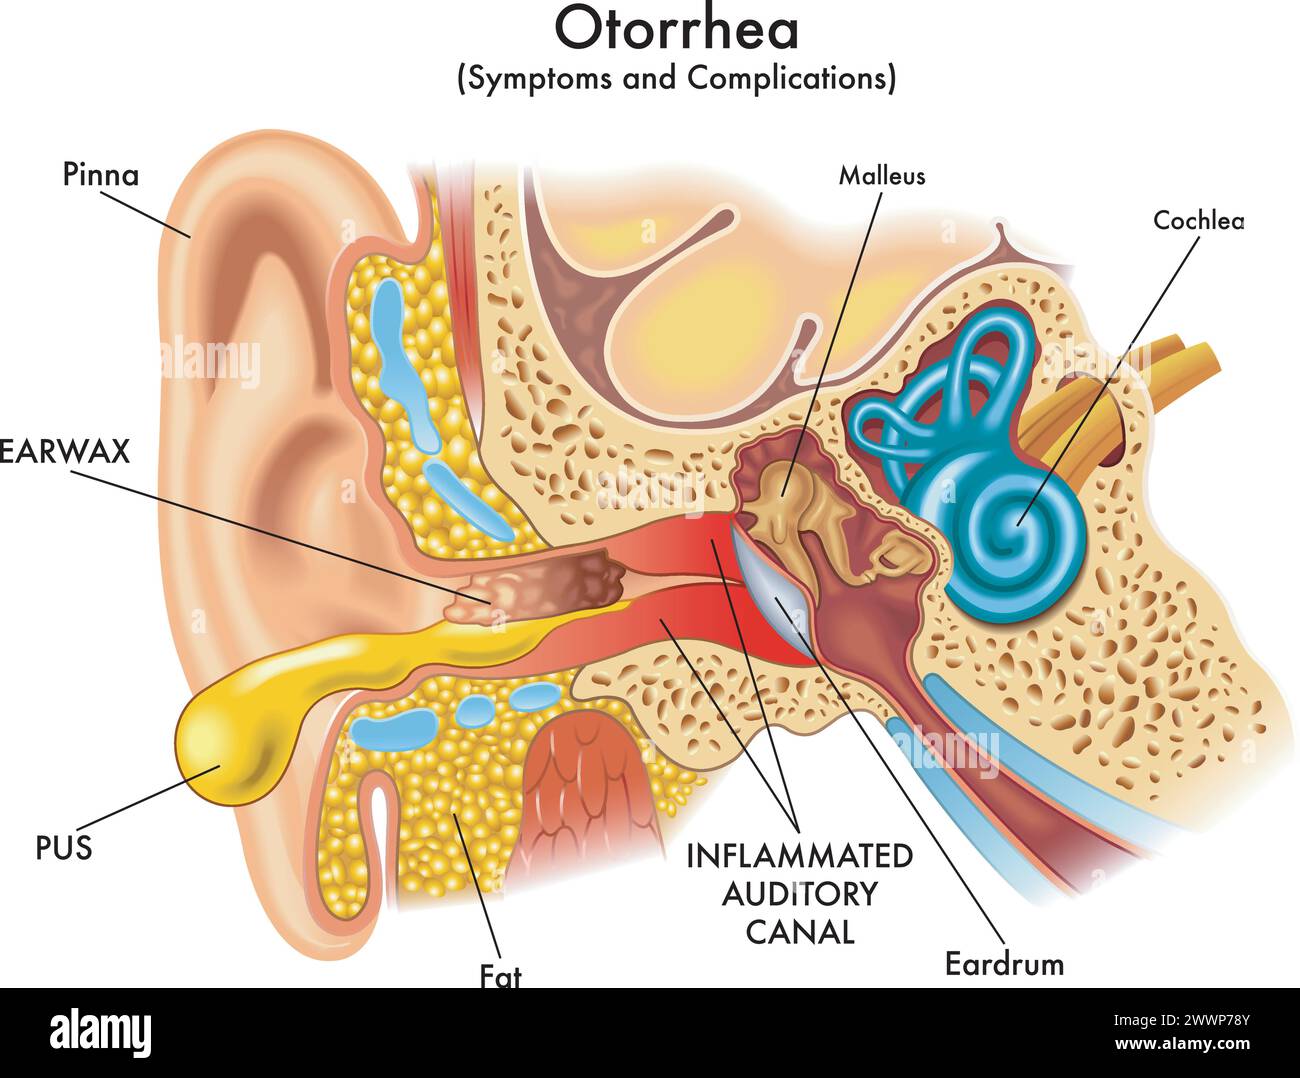 Illustrazione medica di alcuni sintomi e complicazioni di otorrea, una patologia che colpisce l'orecchio, con annotazioni. Illustrazione Vettoriale